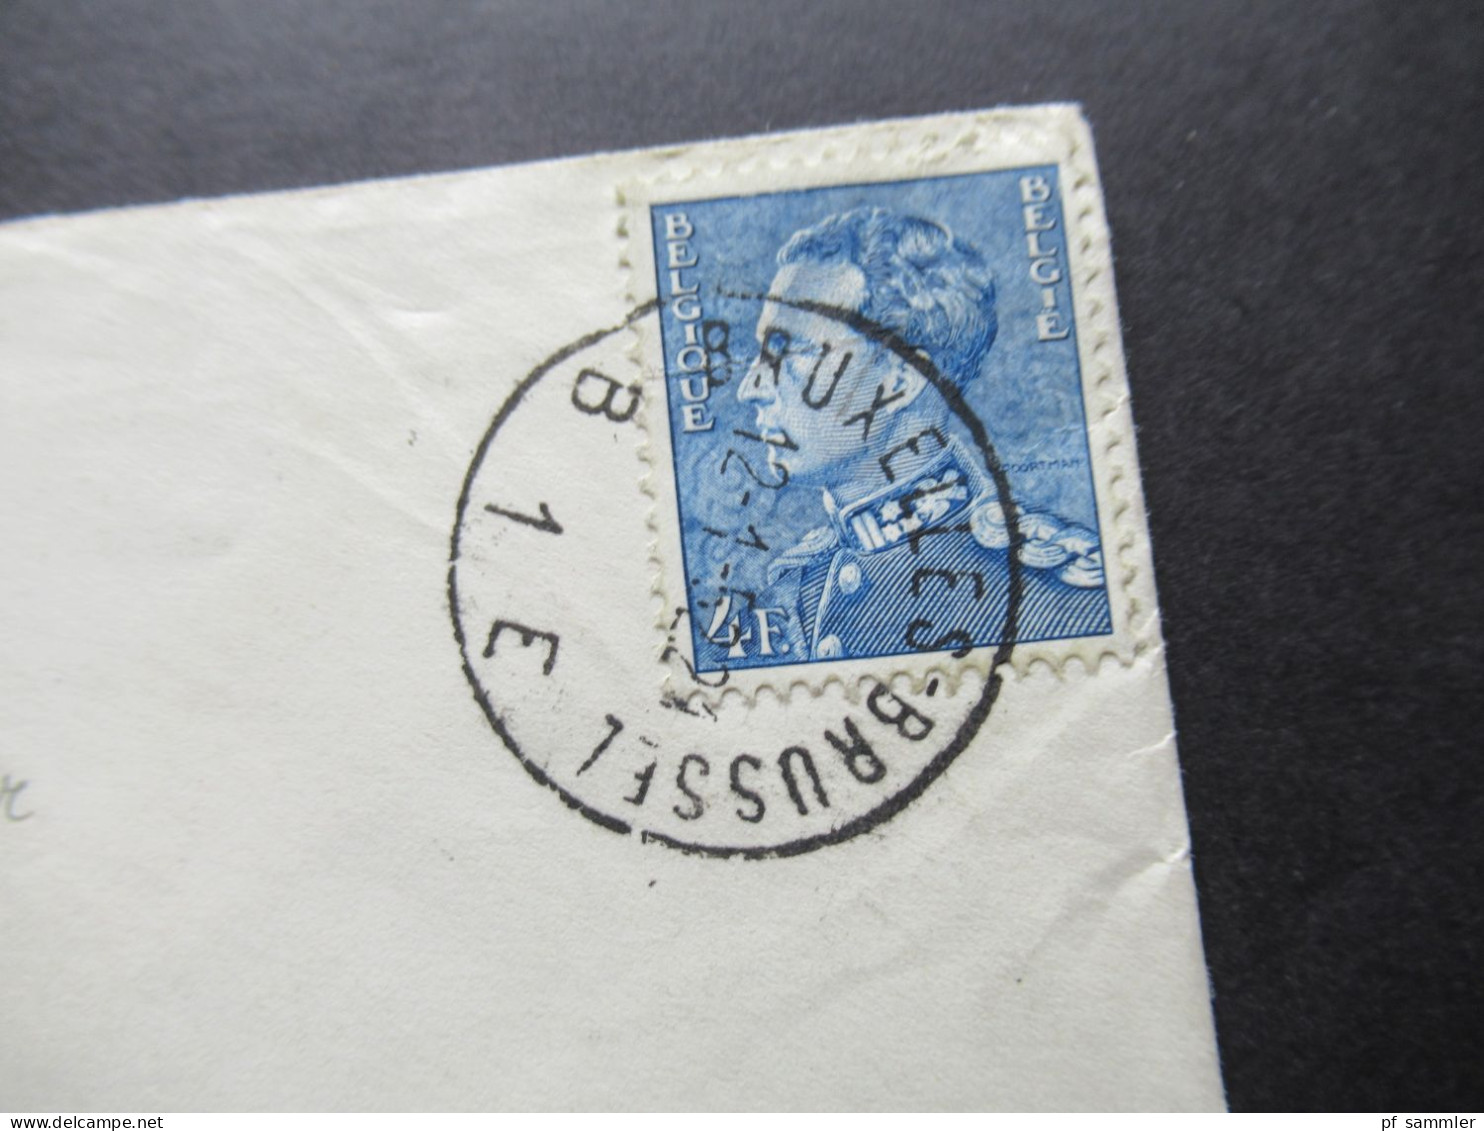 Belgien 1951 / 52 Zensurbelege Stempel Österreichische Zensurstelle 263 und 527 Auslandsbriefe nach Wien